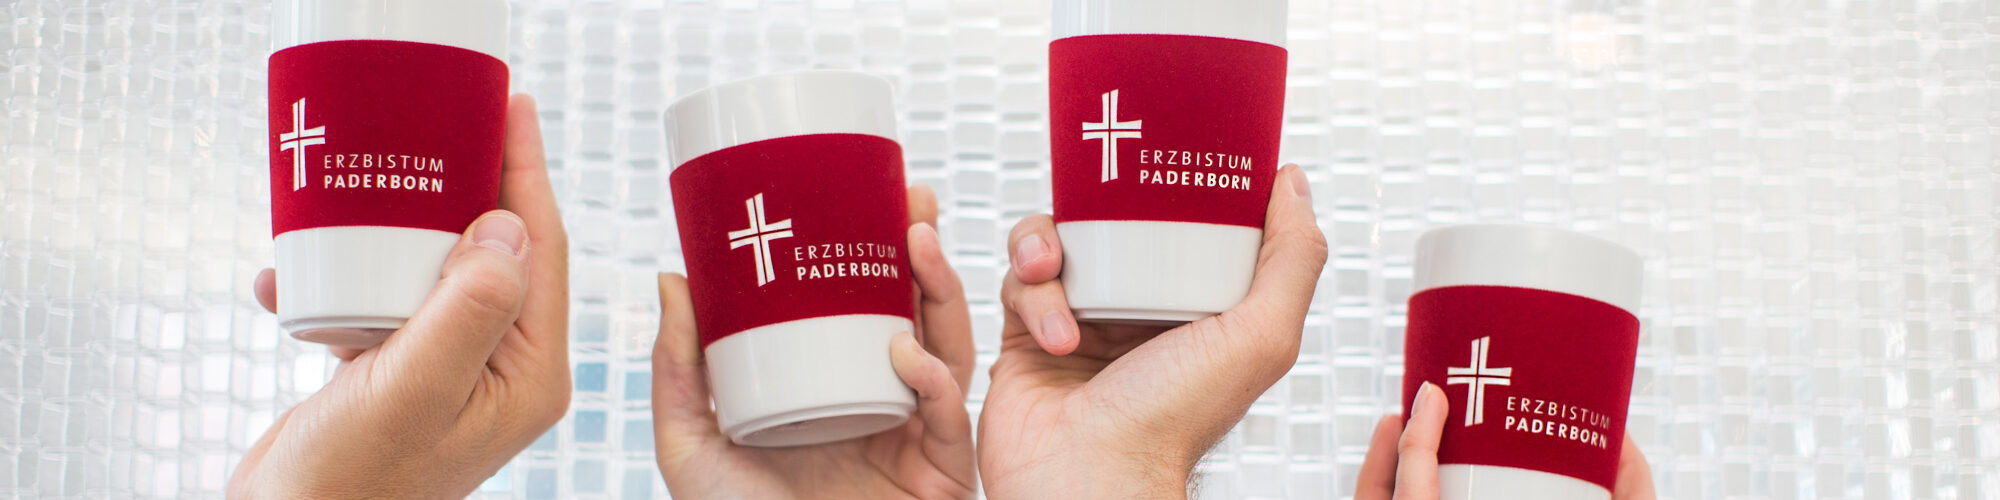 Kaffeebecher des Erzbistums Paderborn